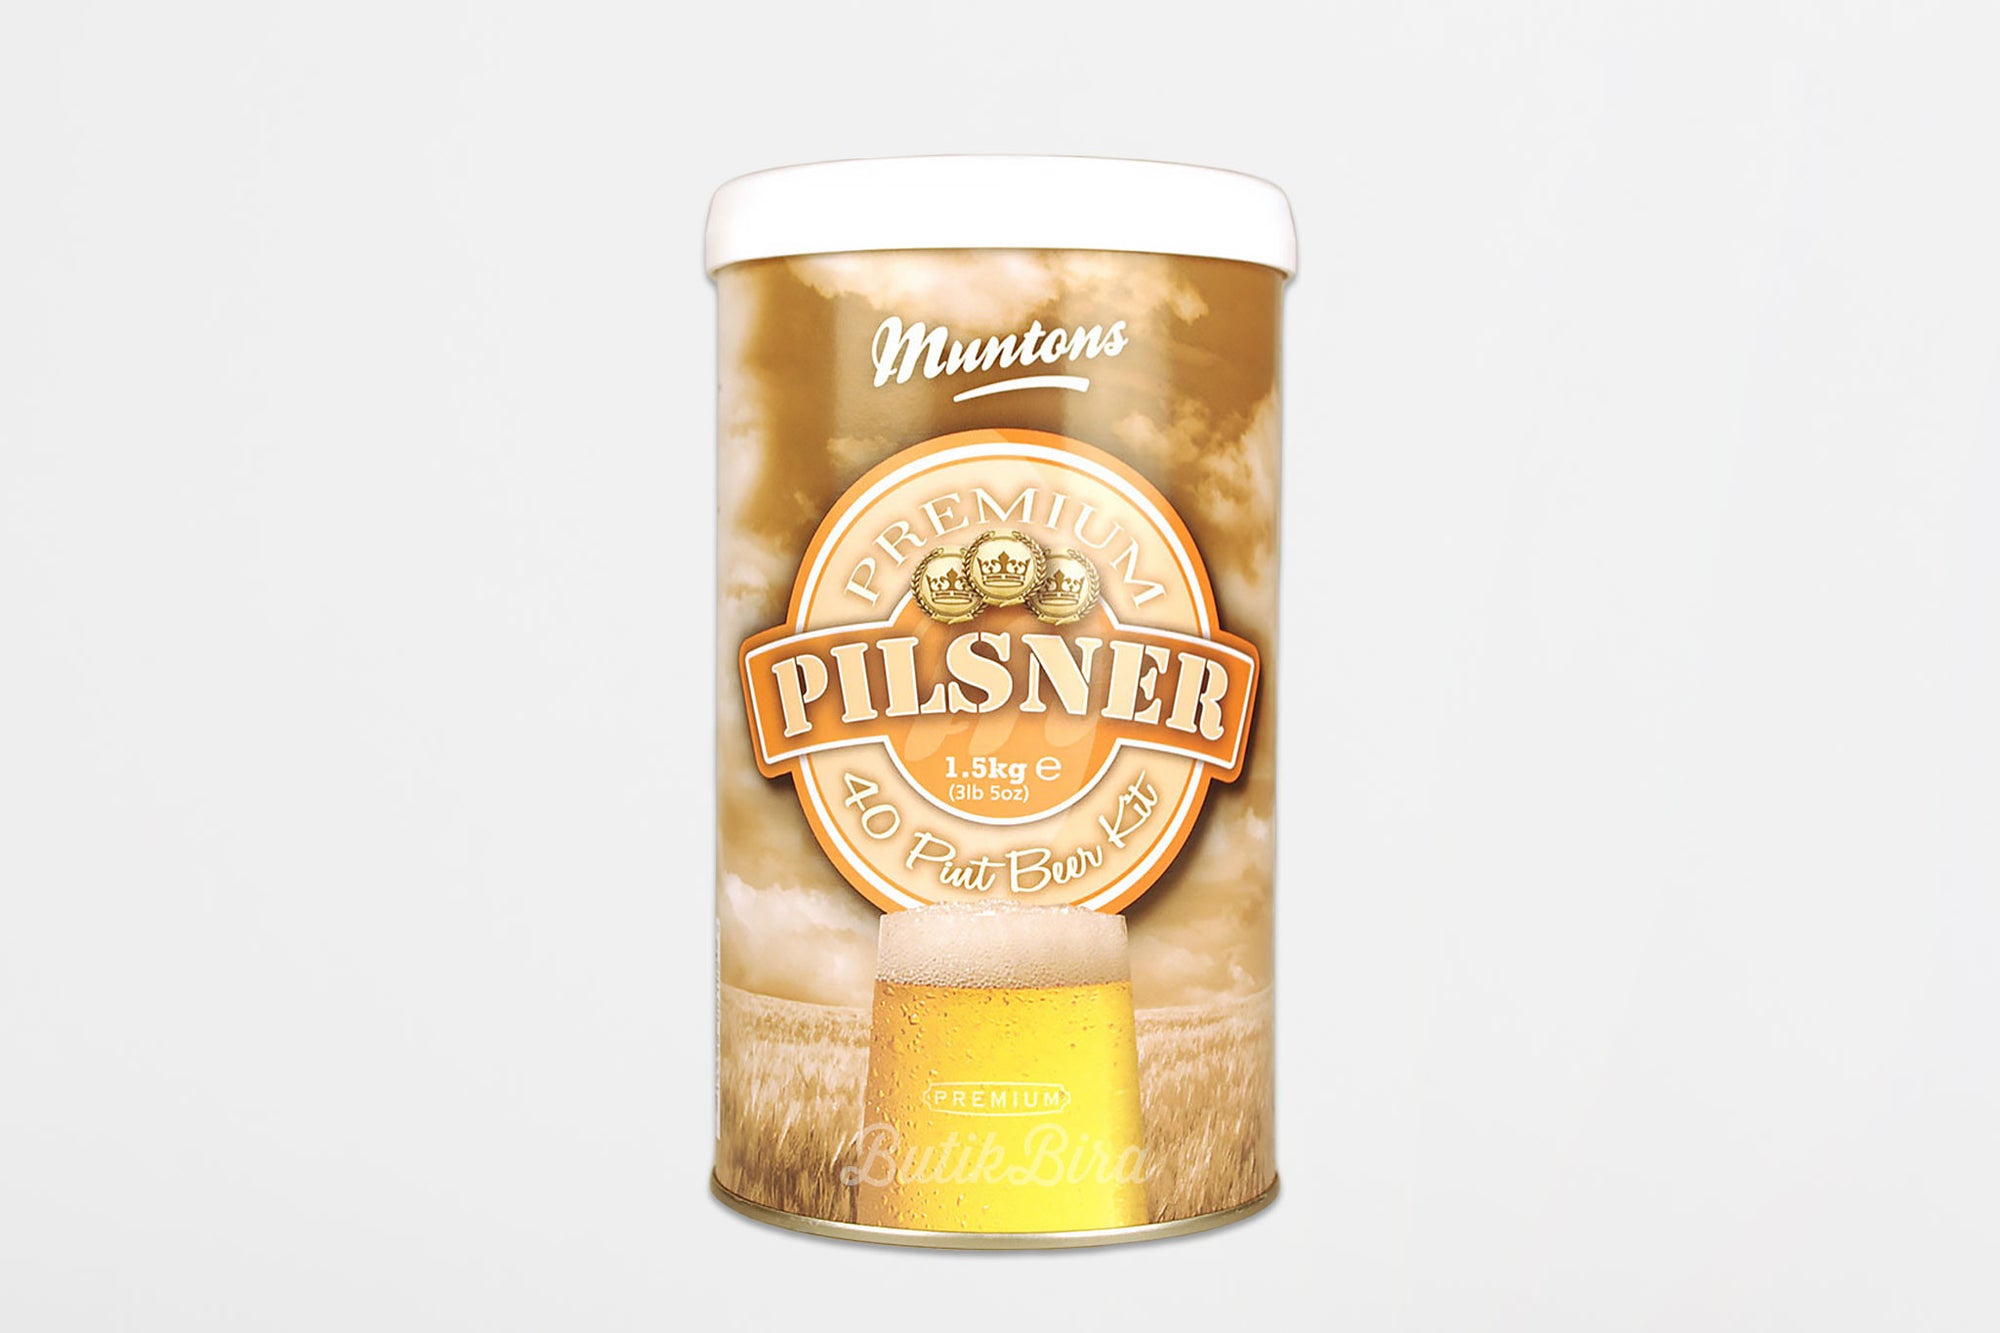 Muntons Premium Pilsner Bira Kiti - Butik Bira